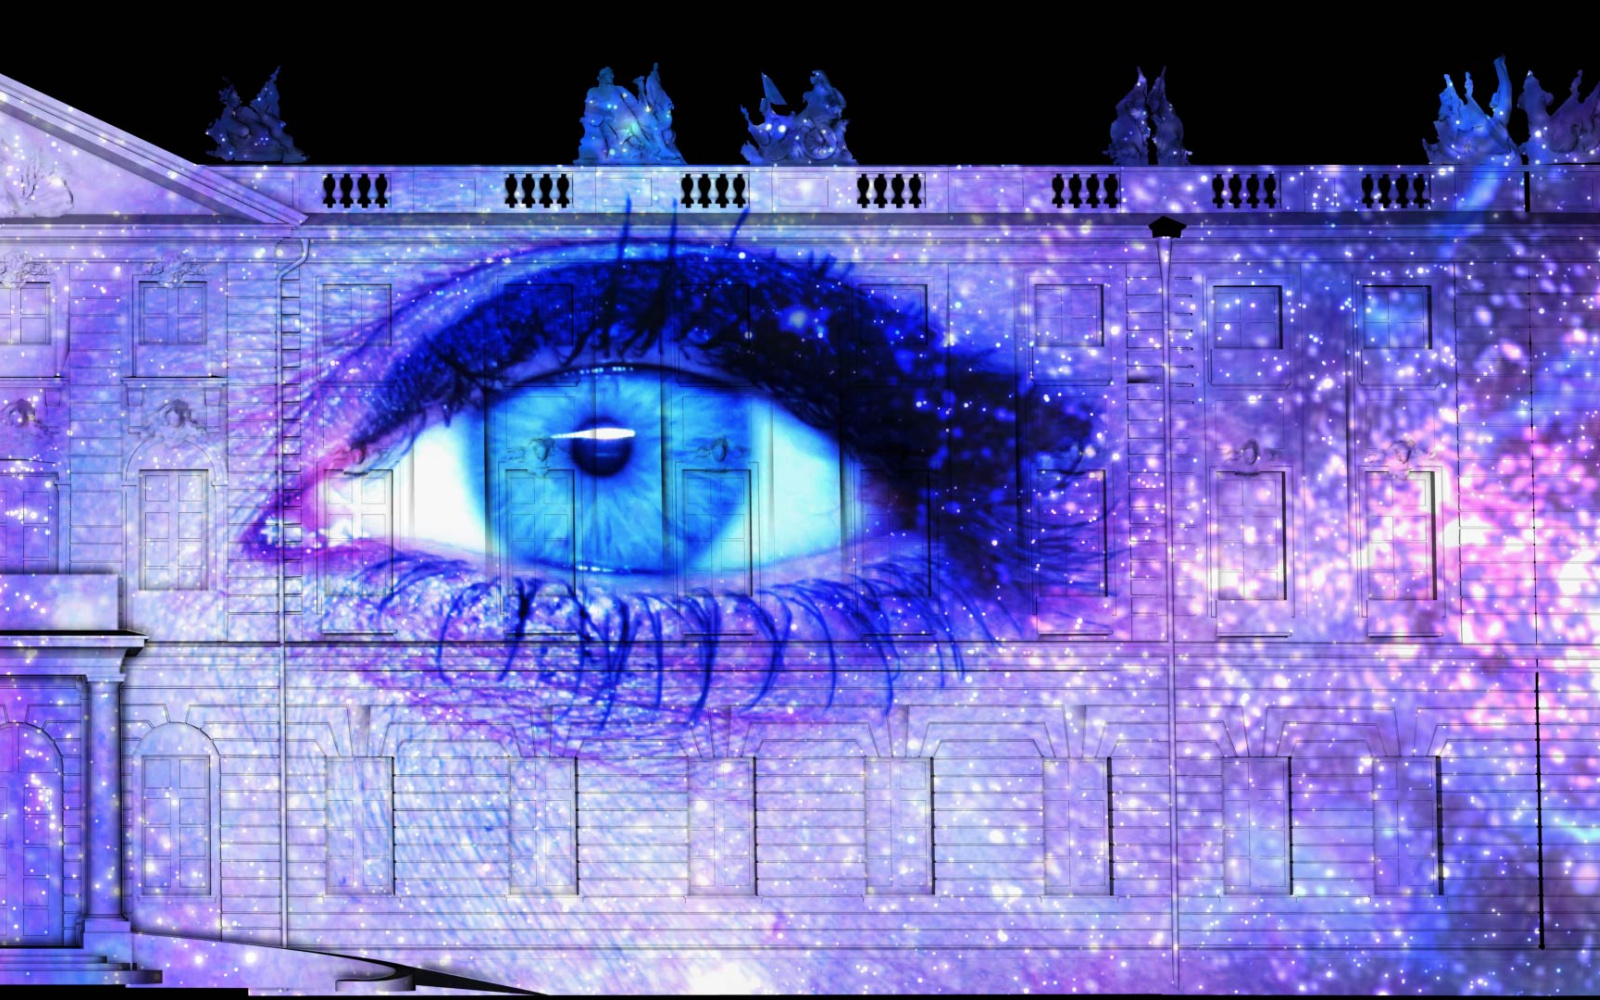 Auf der Karlsruher Schlossfassade ist ein Projection Mapping zu sehen, das in der Nacht leuchtet. Das Mapping zeigt das Gesicht einer Frau in der Mitte, die Augen sind weit geöffnet; um sie herum ist der Kosmos.